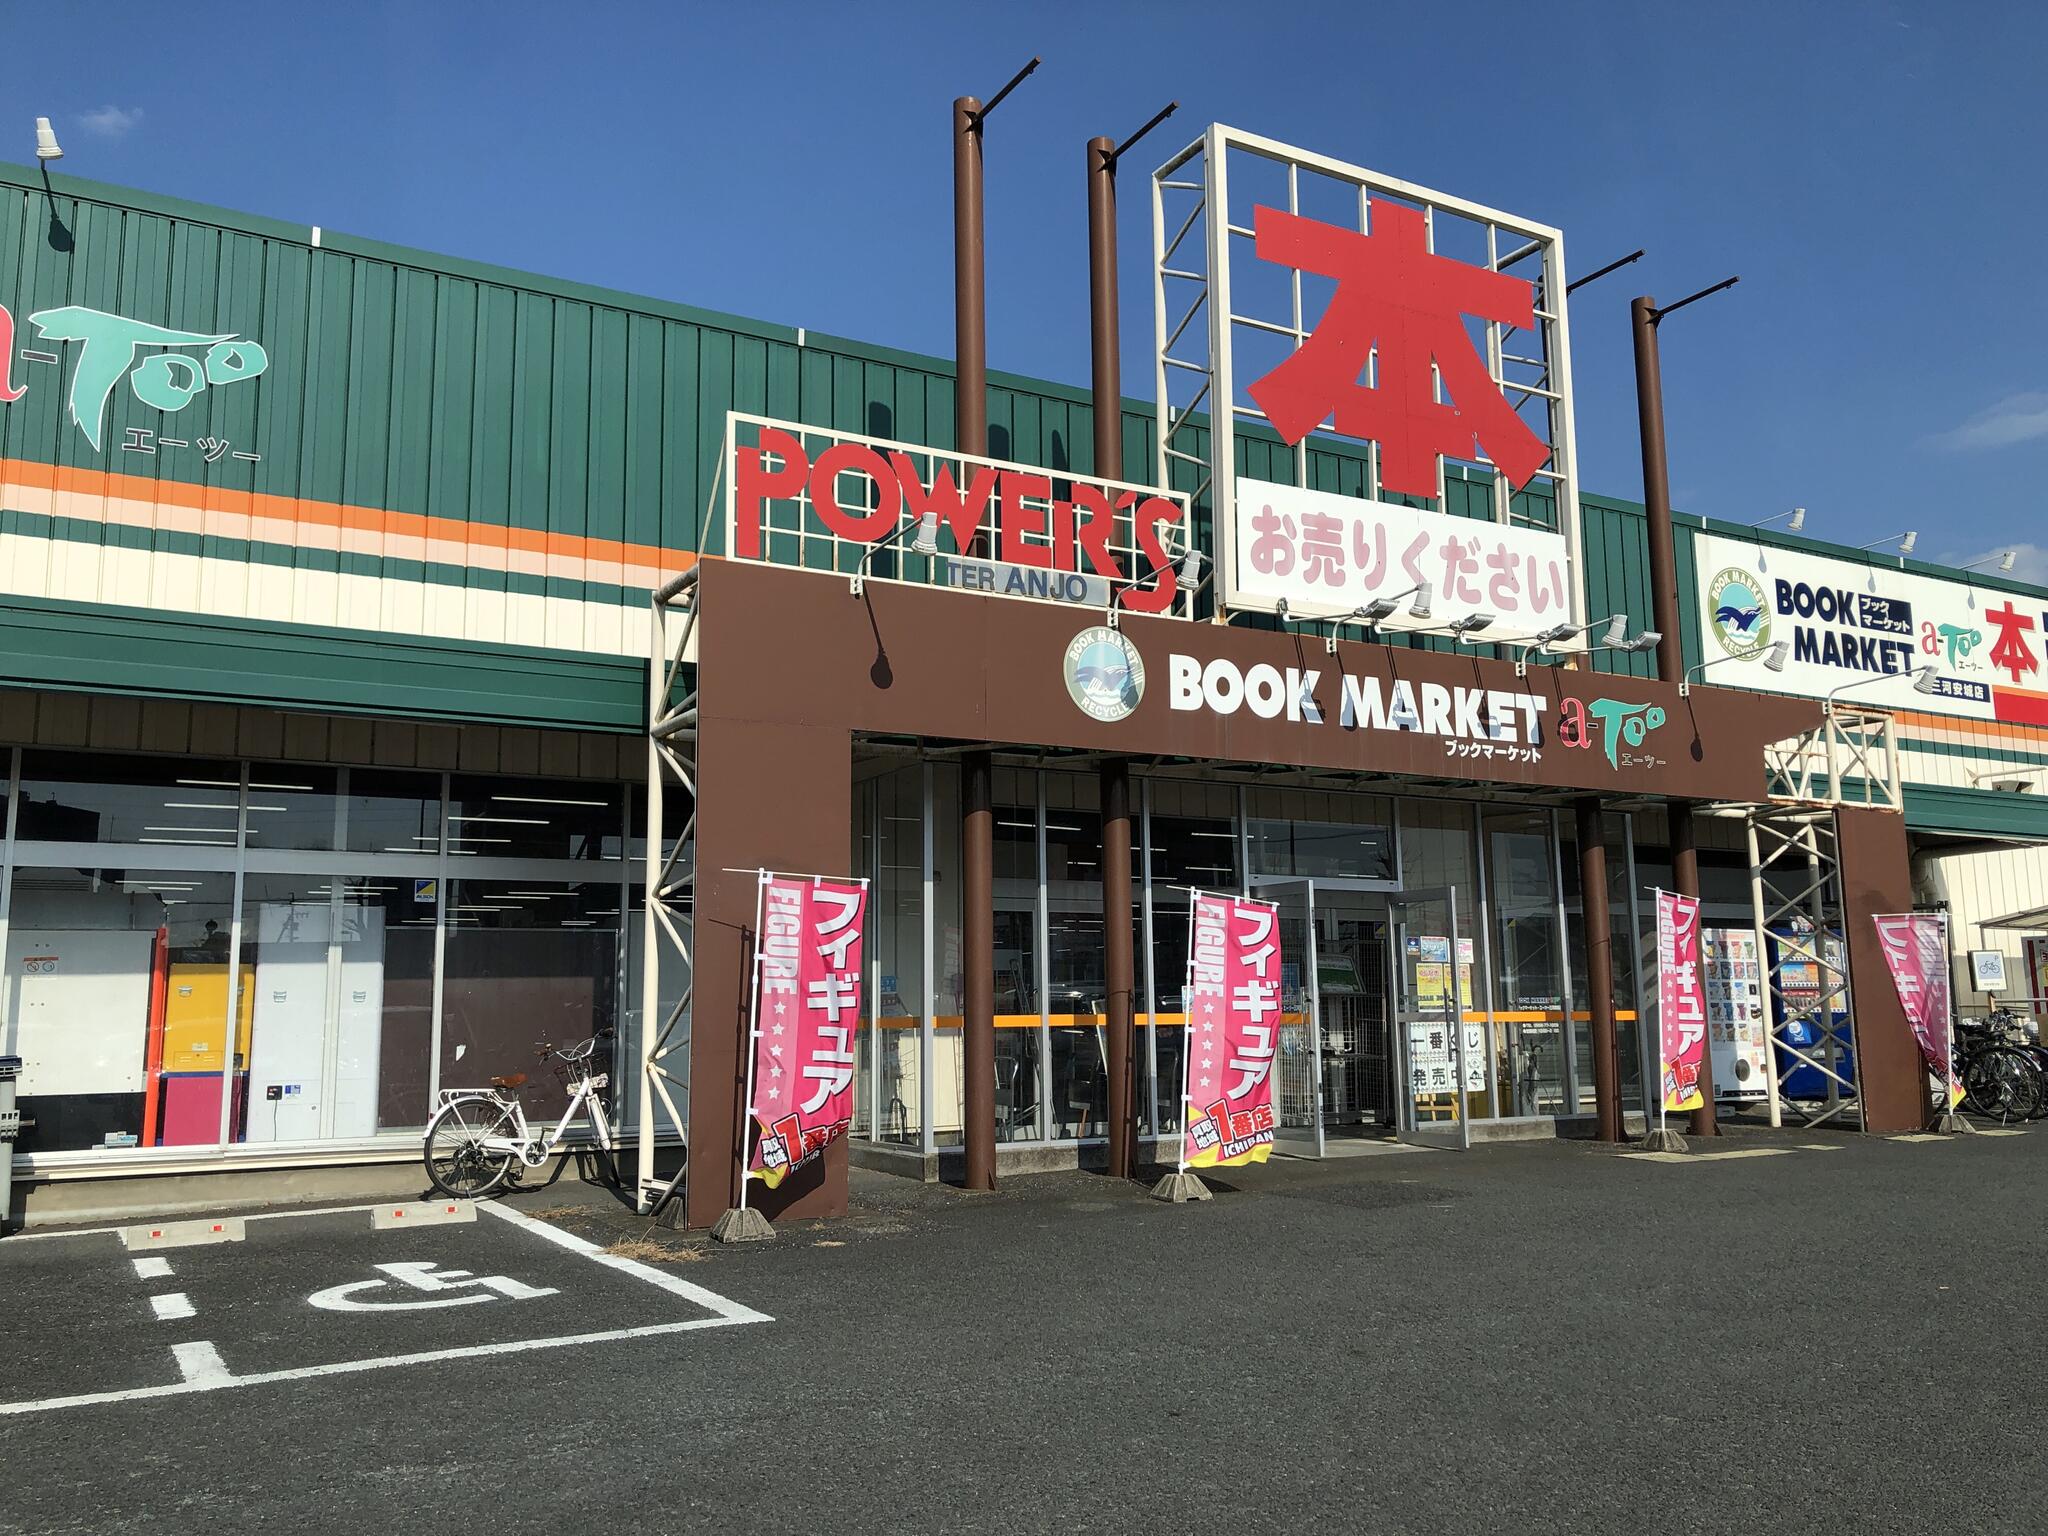 ブックマーケット・エーツー 三河安城店の代表写真1